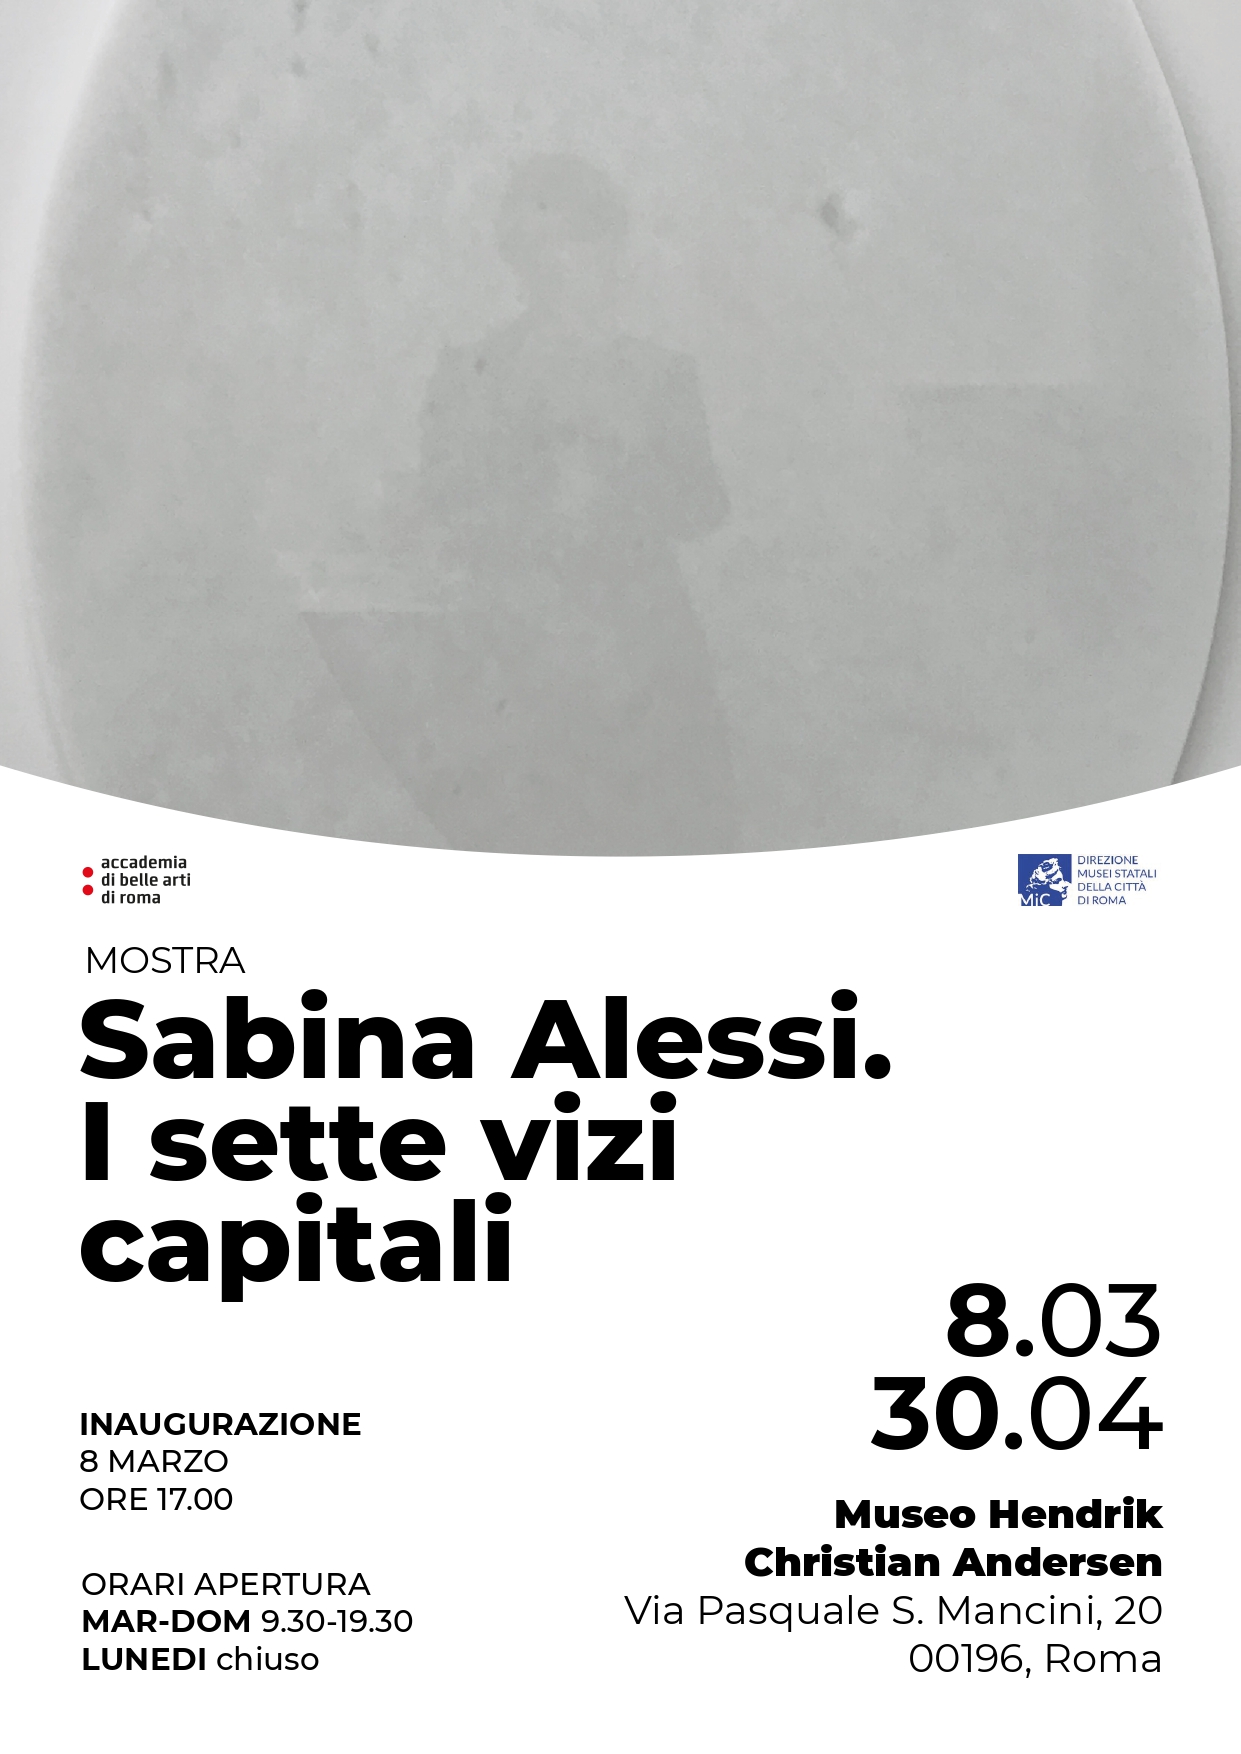 Sabina Alessi - I sette vizi capital